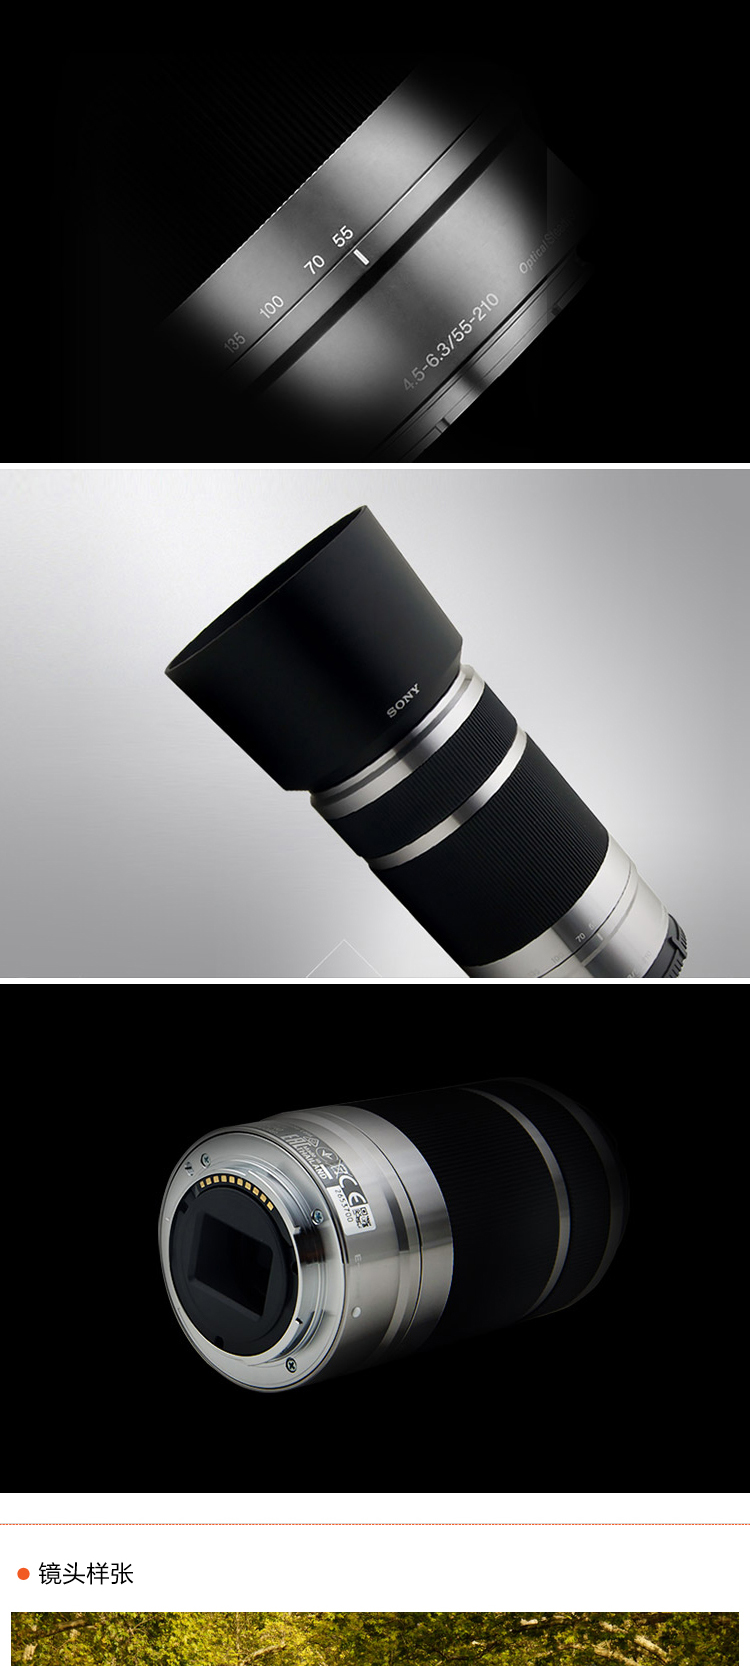 索尼(SONY) 微单相机镜头 E 55-210mm f/4.5-6.3 OSS 远摄大变焦镜头 黑色 SEL55210